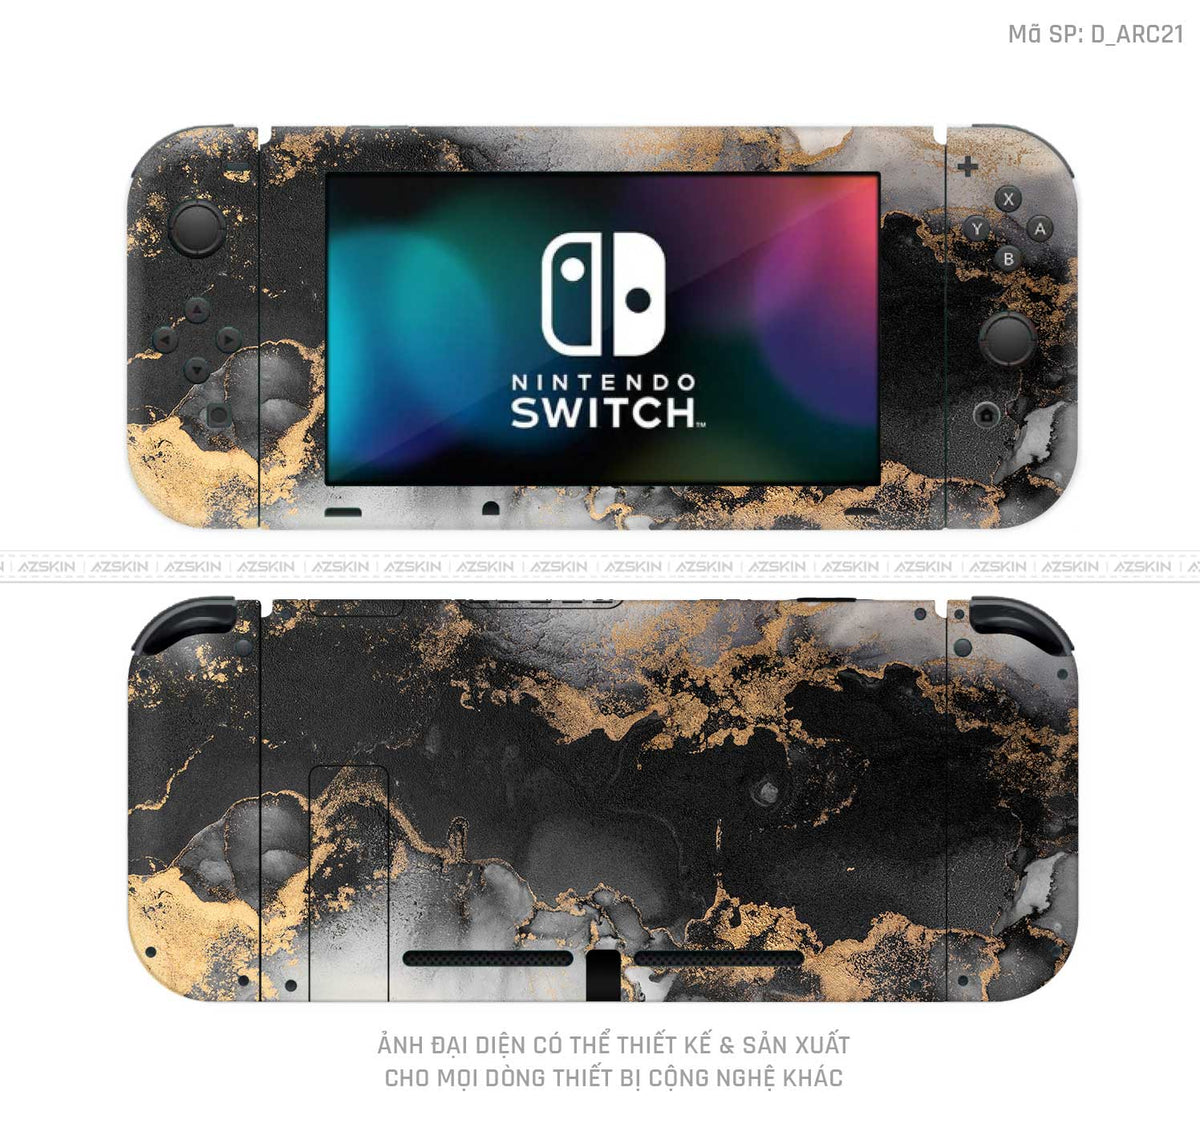 Dán Skin Máy Chơi Game Nintendo Switch Hình Nghệ Thuật Arcrylic | D_ARC21